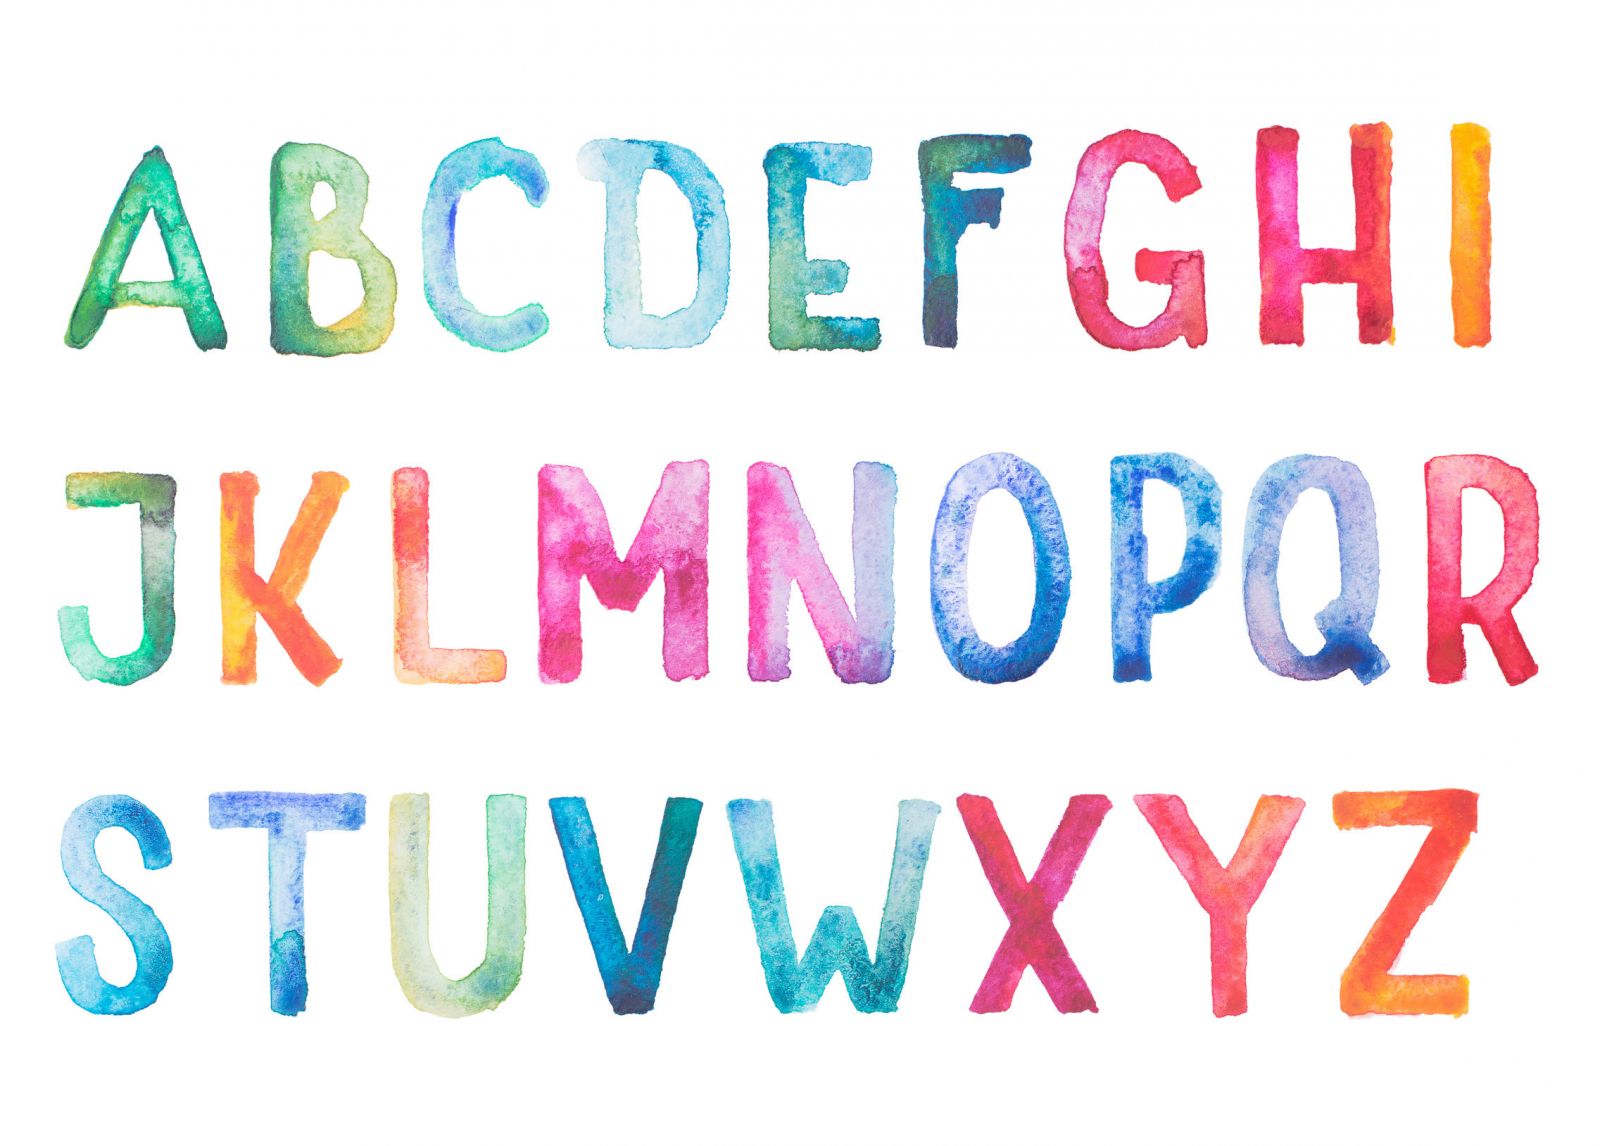 Ein buntes Alphabet ist auf einem weißen Blatt mit Wasserfarben aufgemalt.